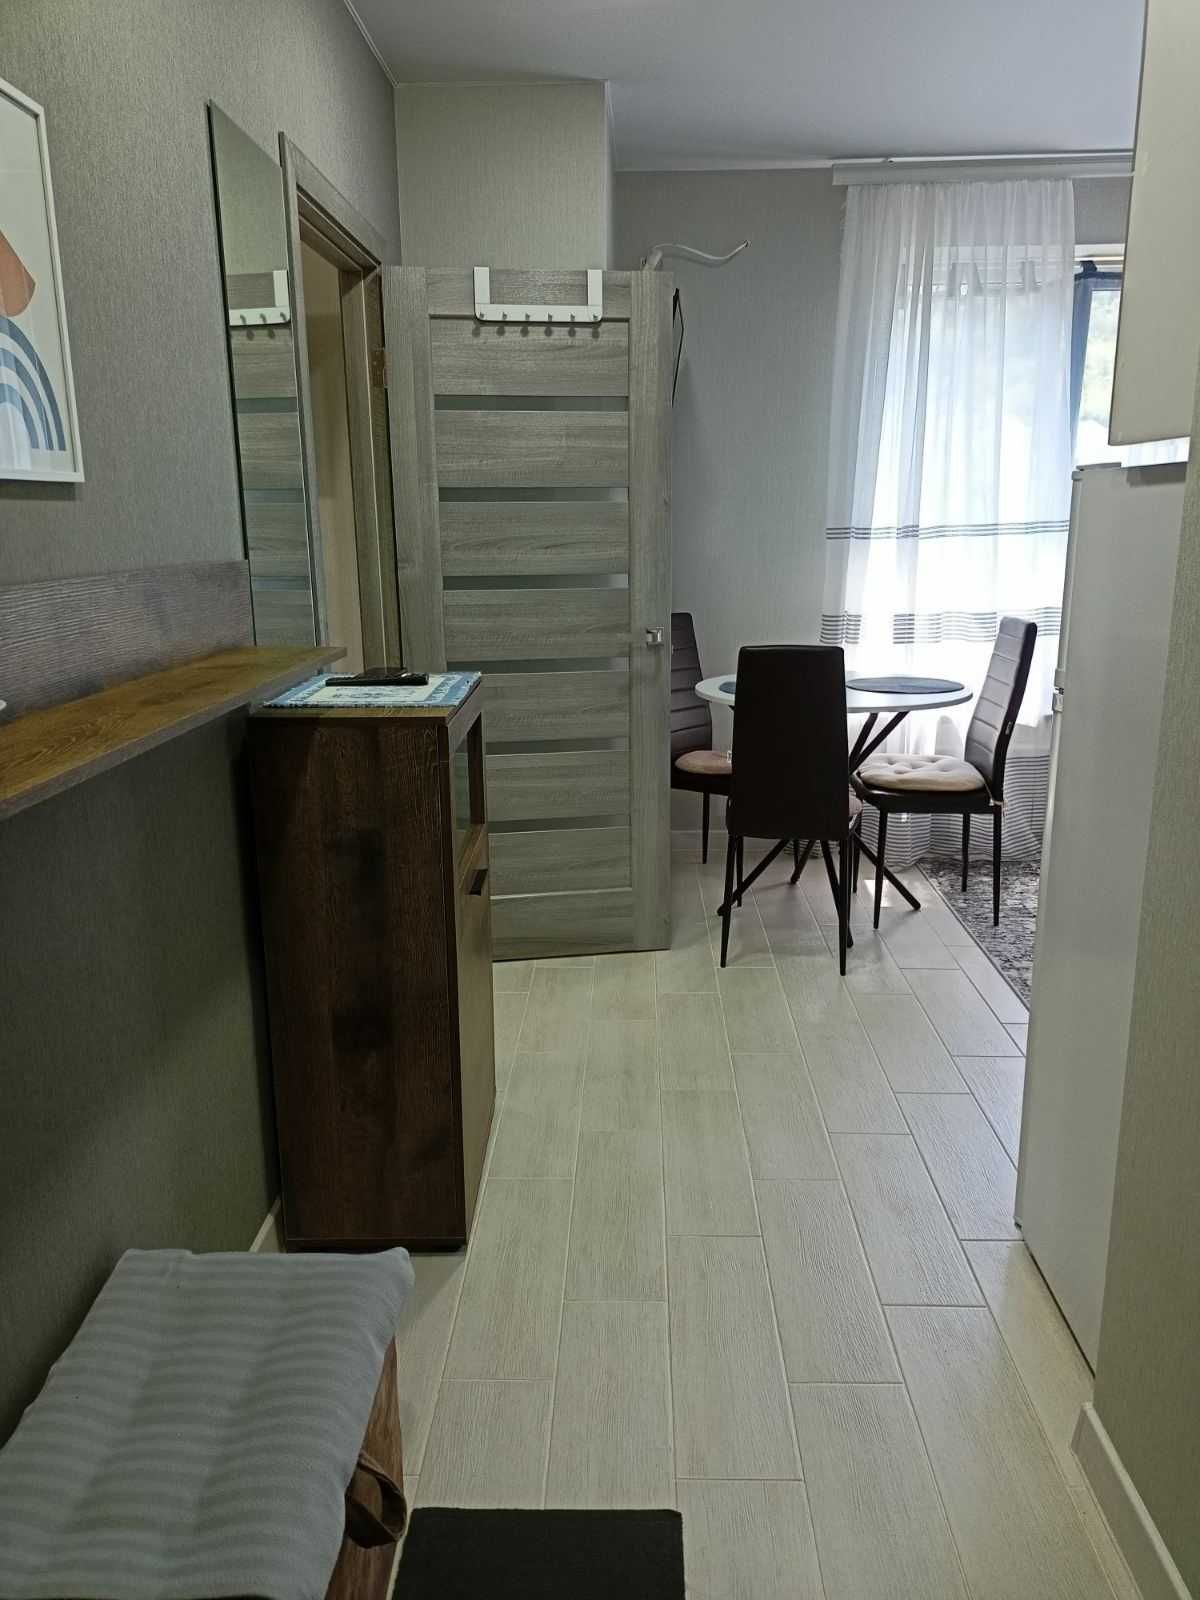 Сдам  квартиру в Поляне на территории санатория Солнечное Закарпатье.